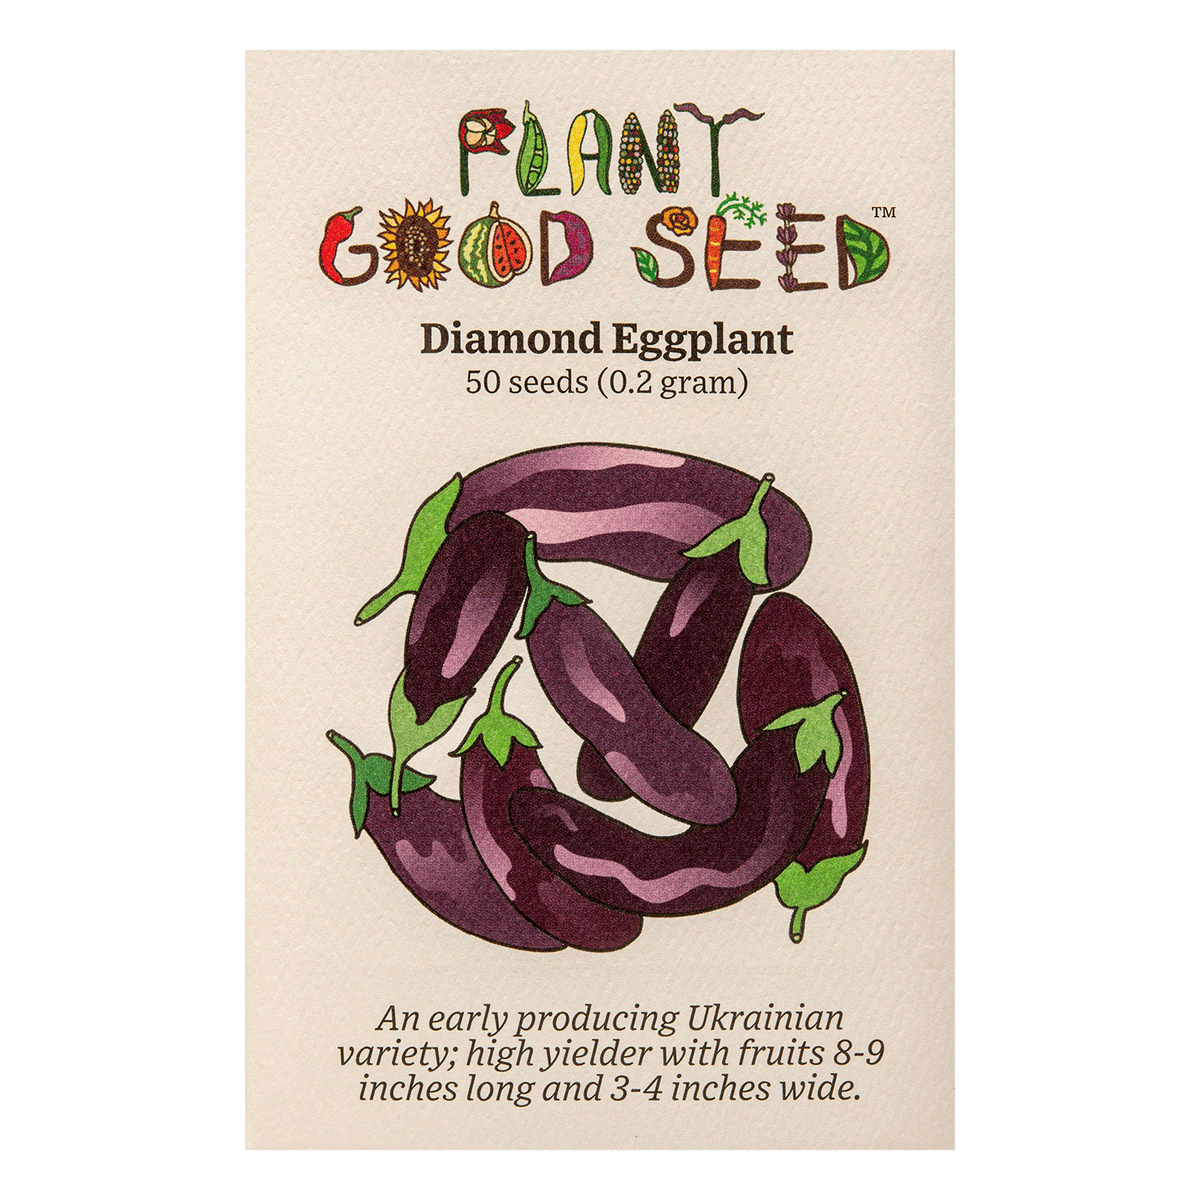 Diamond Eggplant Seed Packet